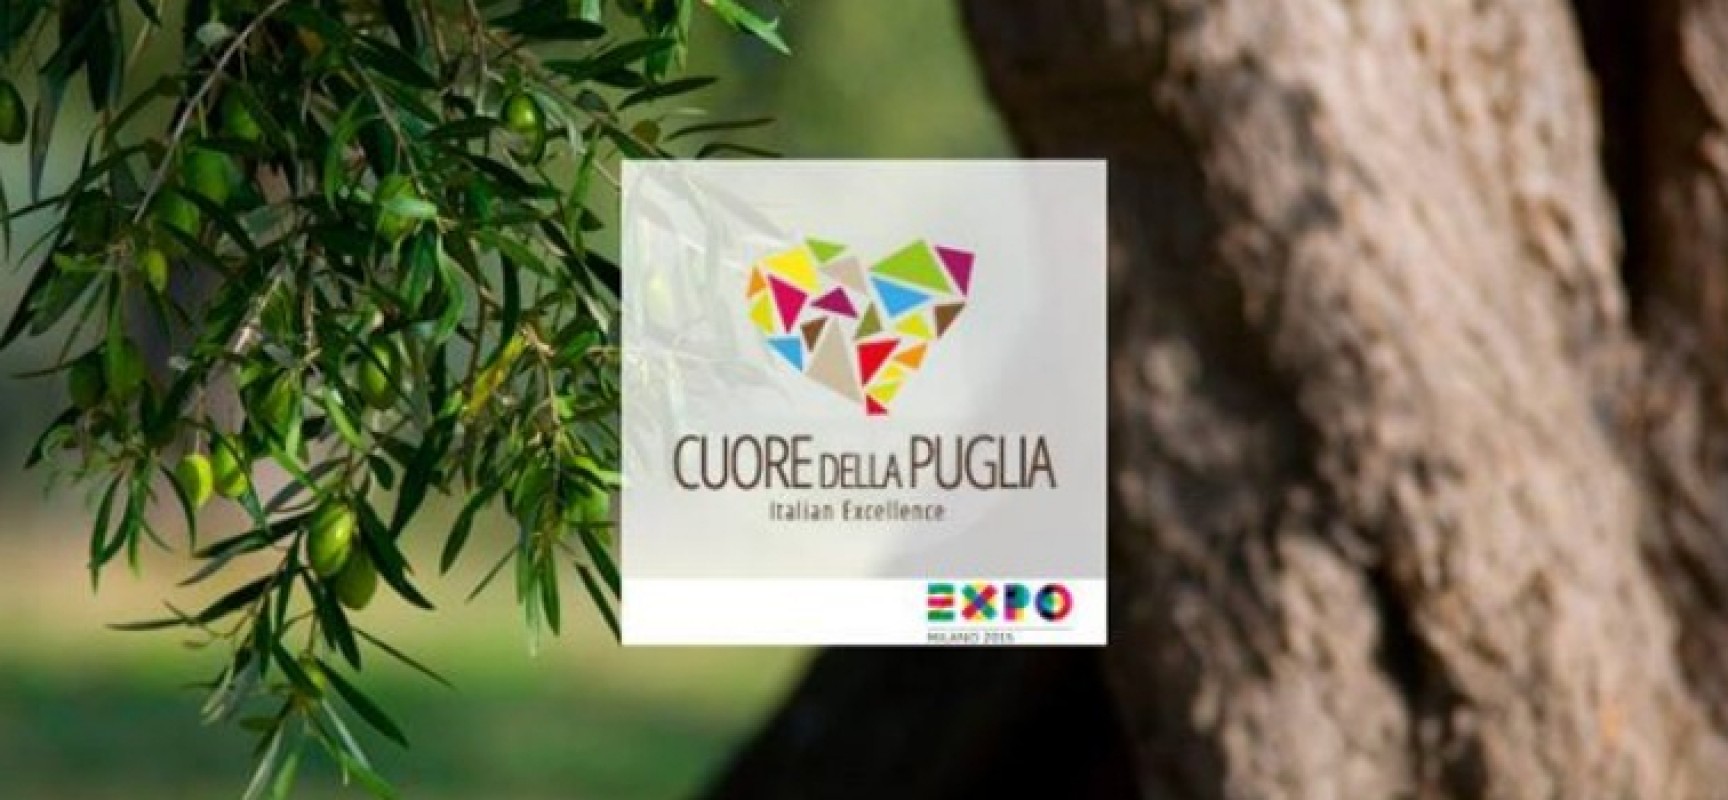 Grazie al “Cuore della Puglia” i sospiri e le eccellenze di Bisceglie approdano all’Expo 2015